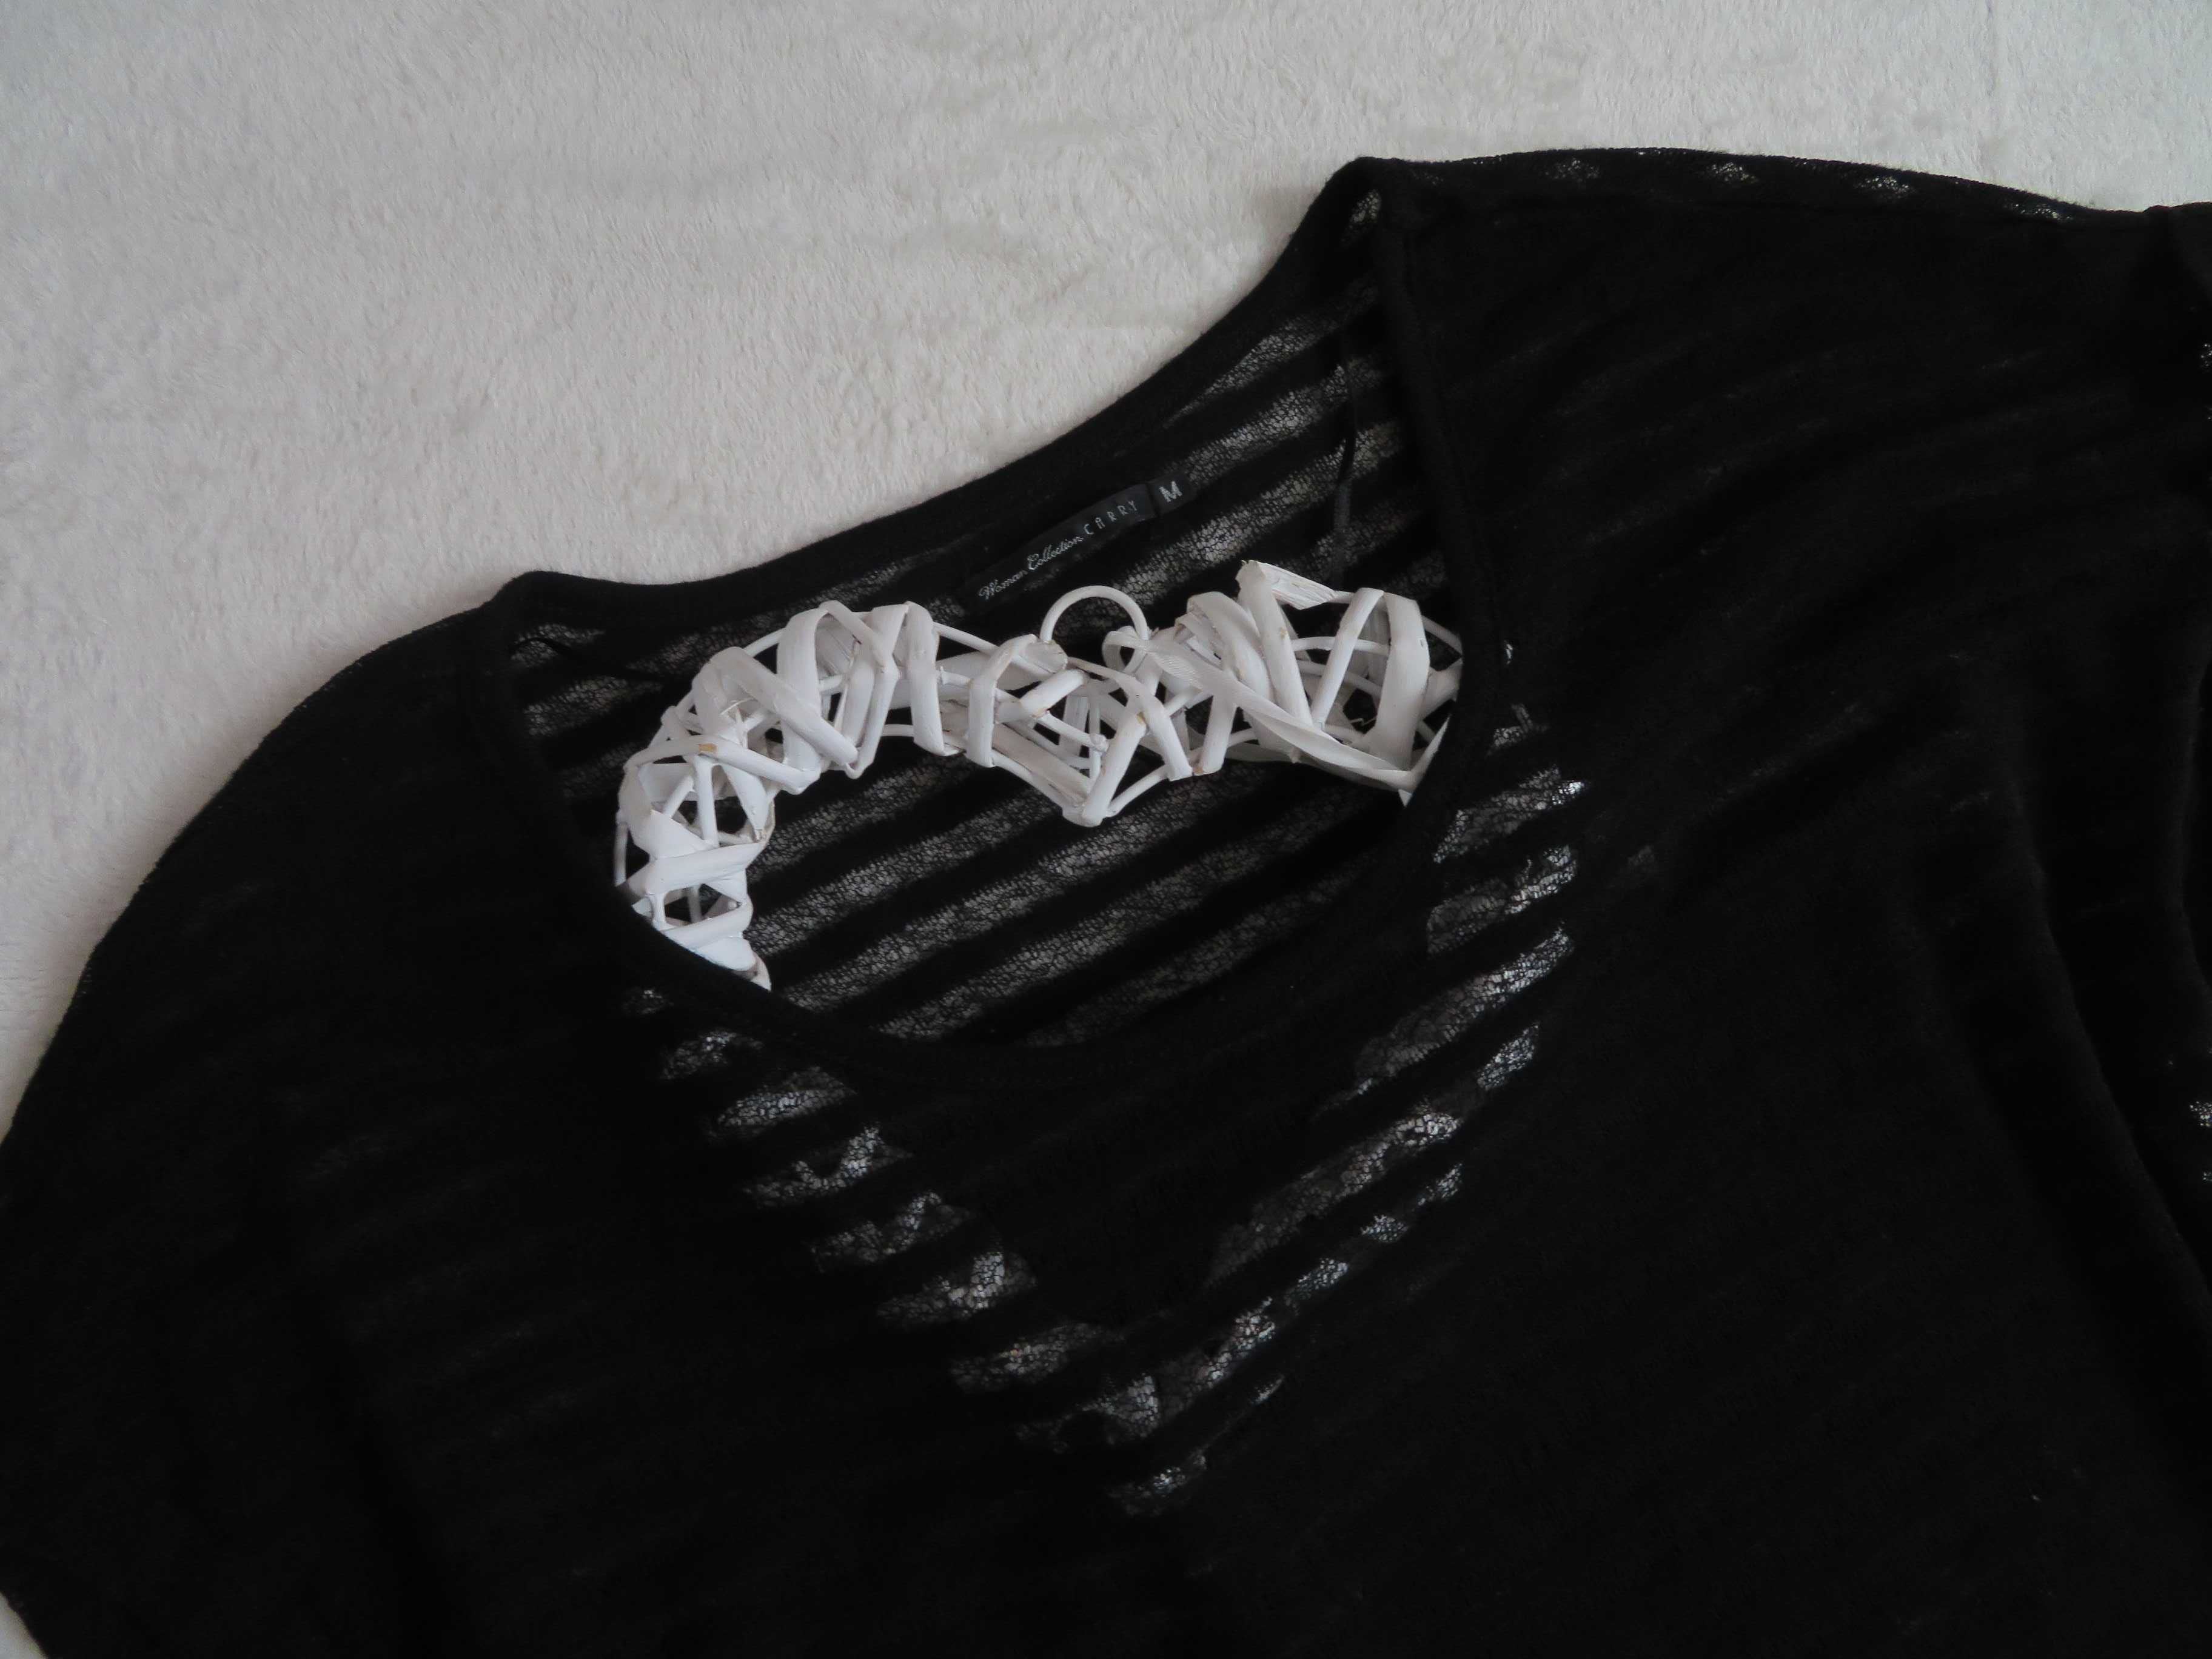 CARRY bluzka damska SIATECZKA Mgiełka paski koszulka czarna, BDB, 38 M